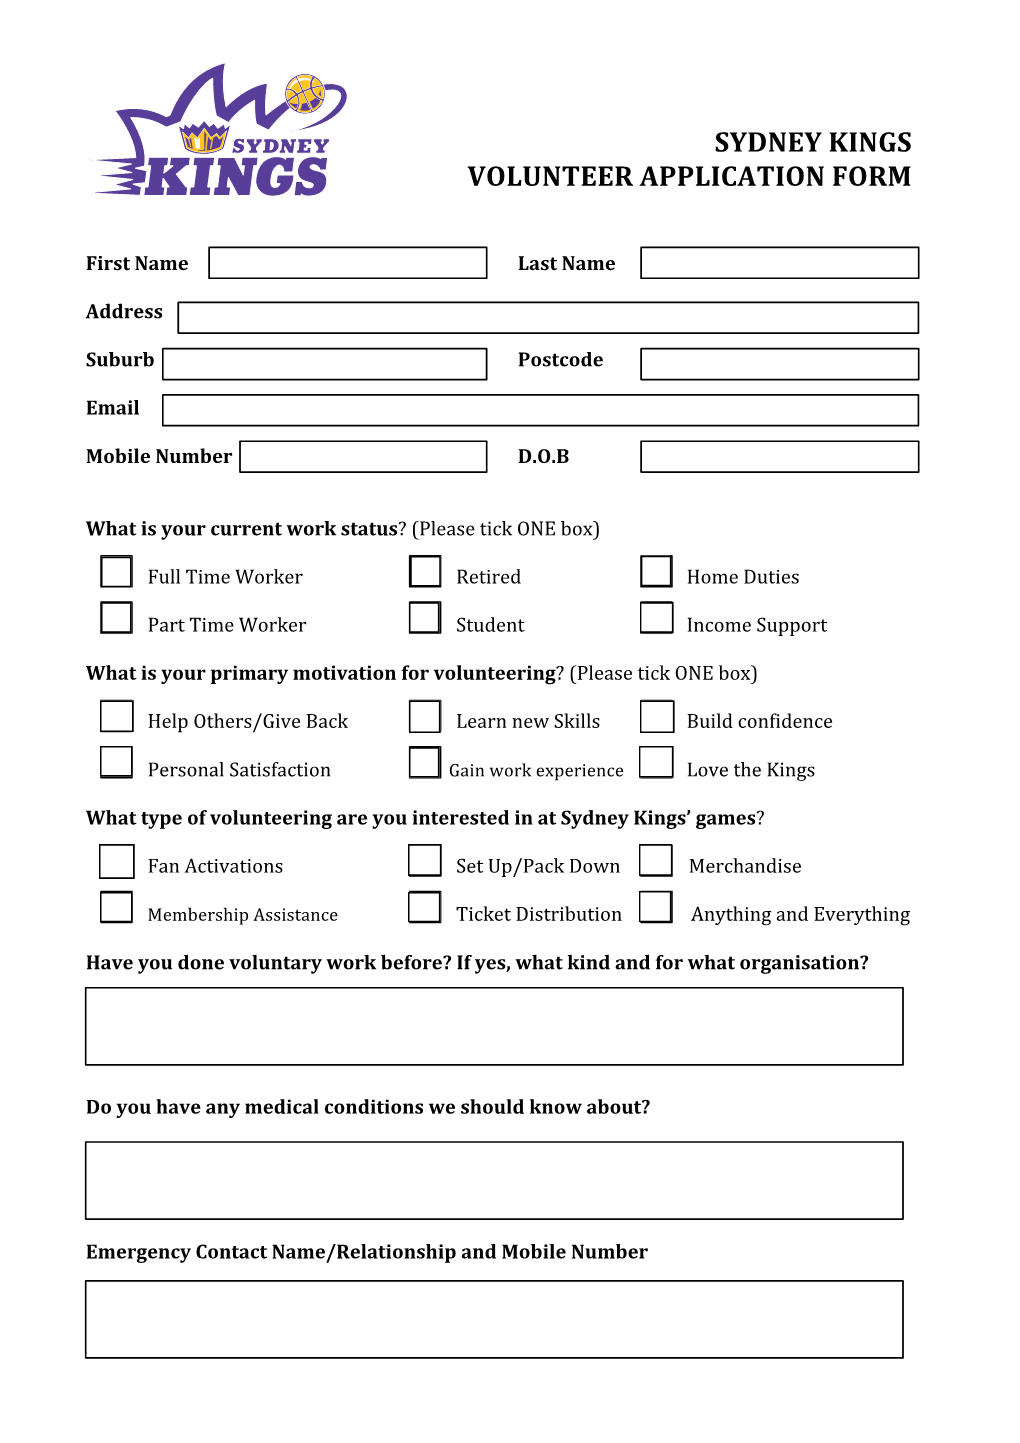 Sydney Kings Volunteer Application Form